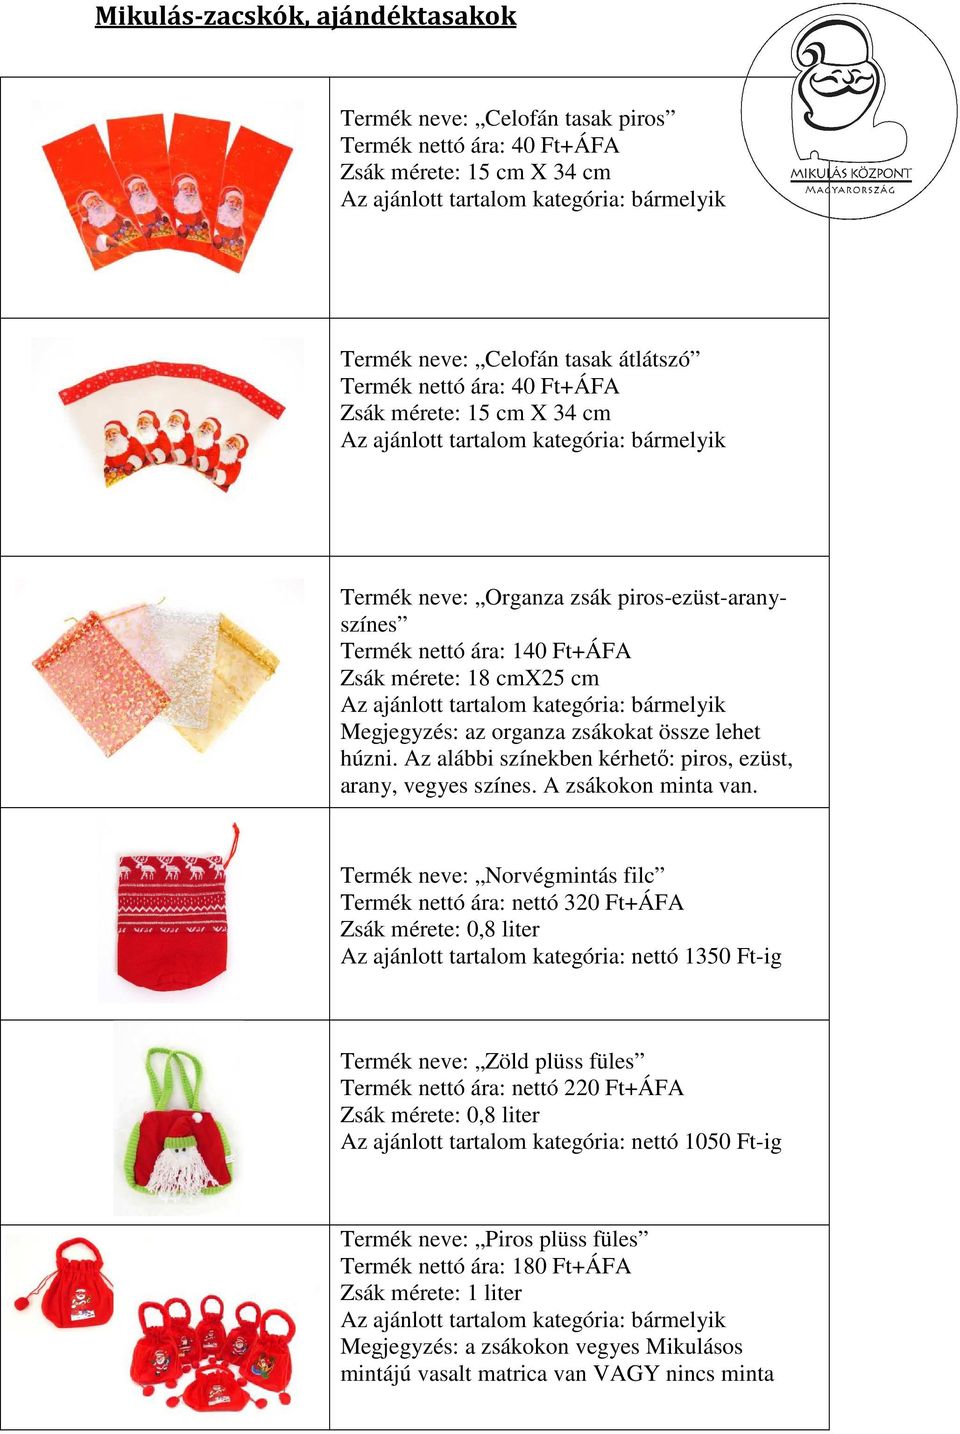 cm Az ajánlott tartalom kategória: bármelyik Megjegyzés: az organza zsákokat össze lehet húzni. Az alábbi színekben kérhető: piros, ezüst, arany, vegyes színes. A zsákokon minta van.